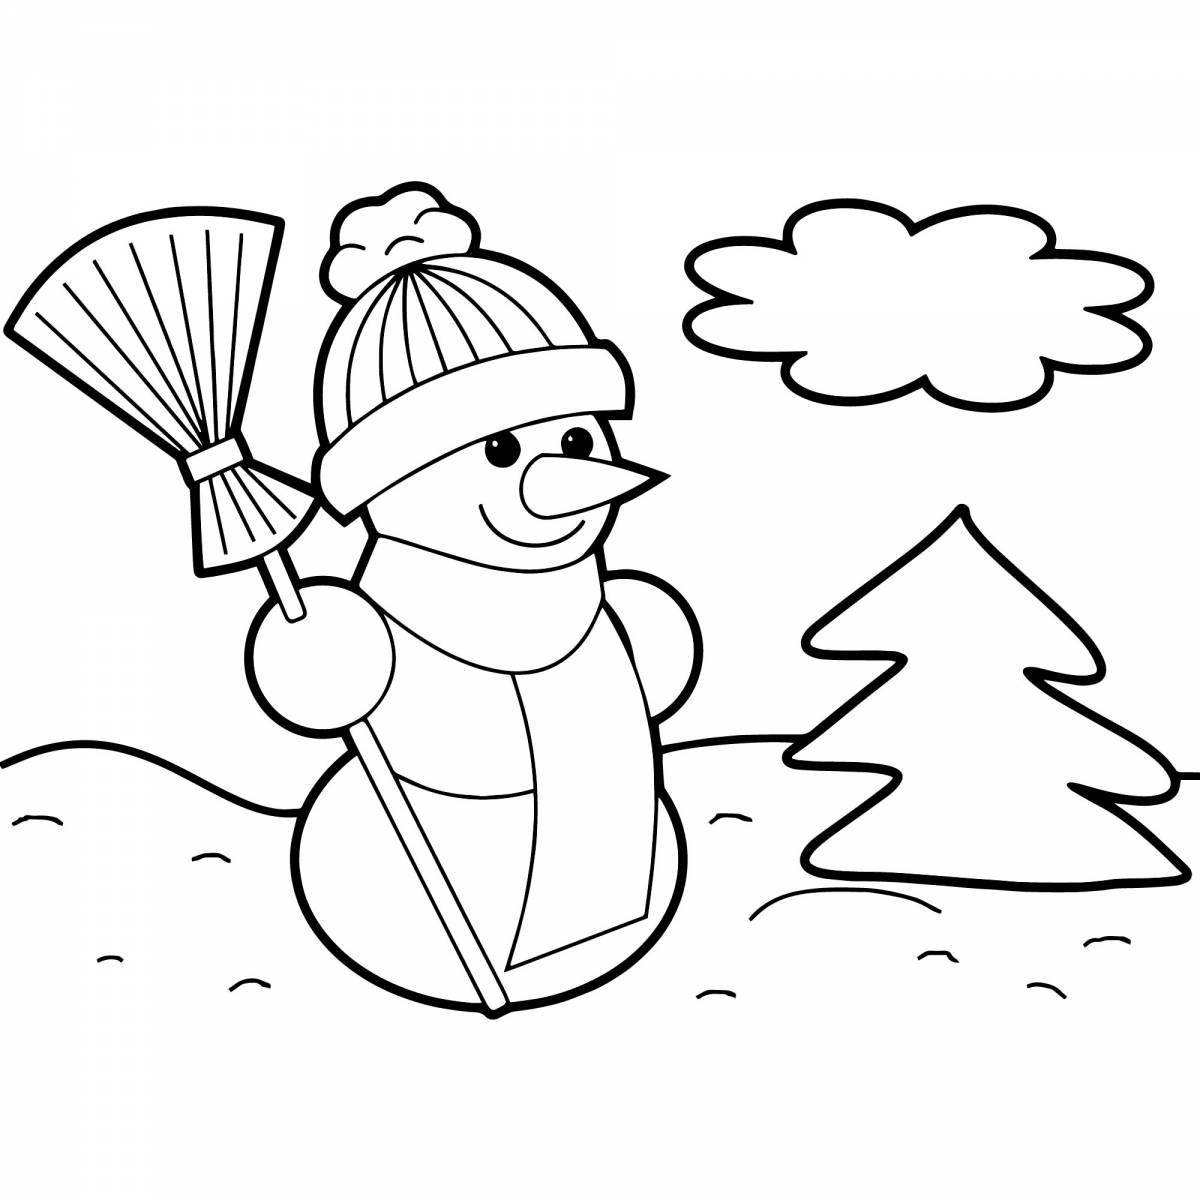 Веселые снеговики в узорчатых шапках и шарфах